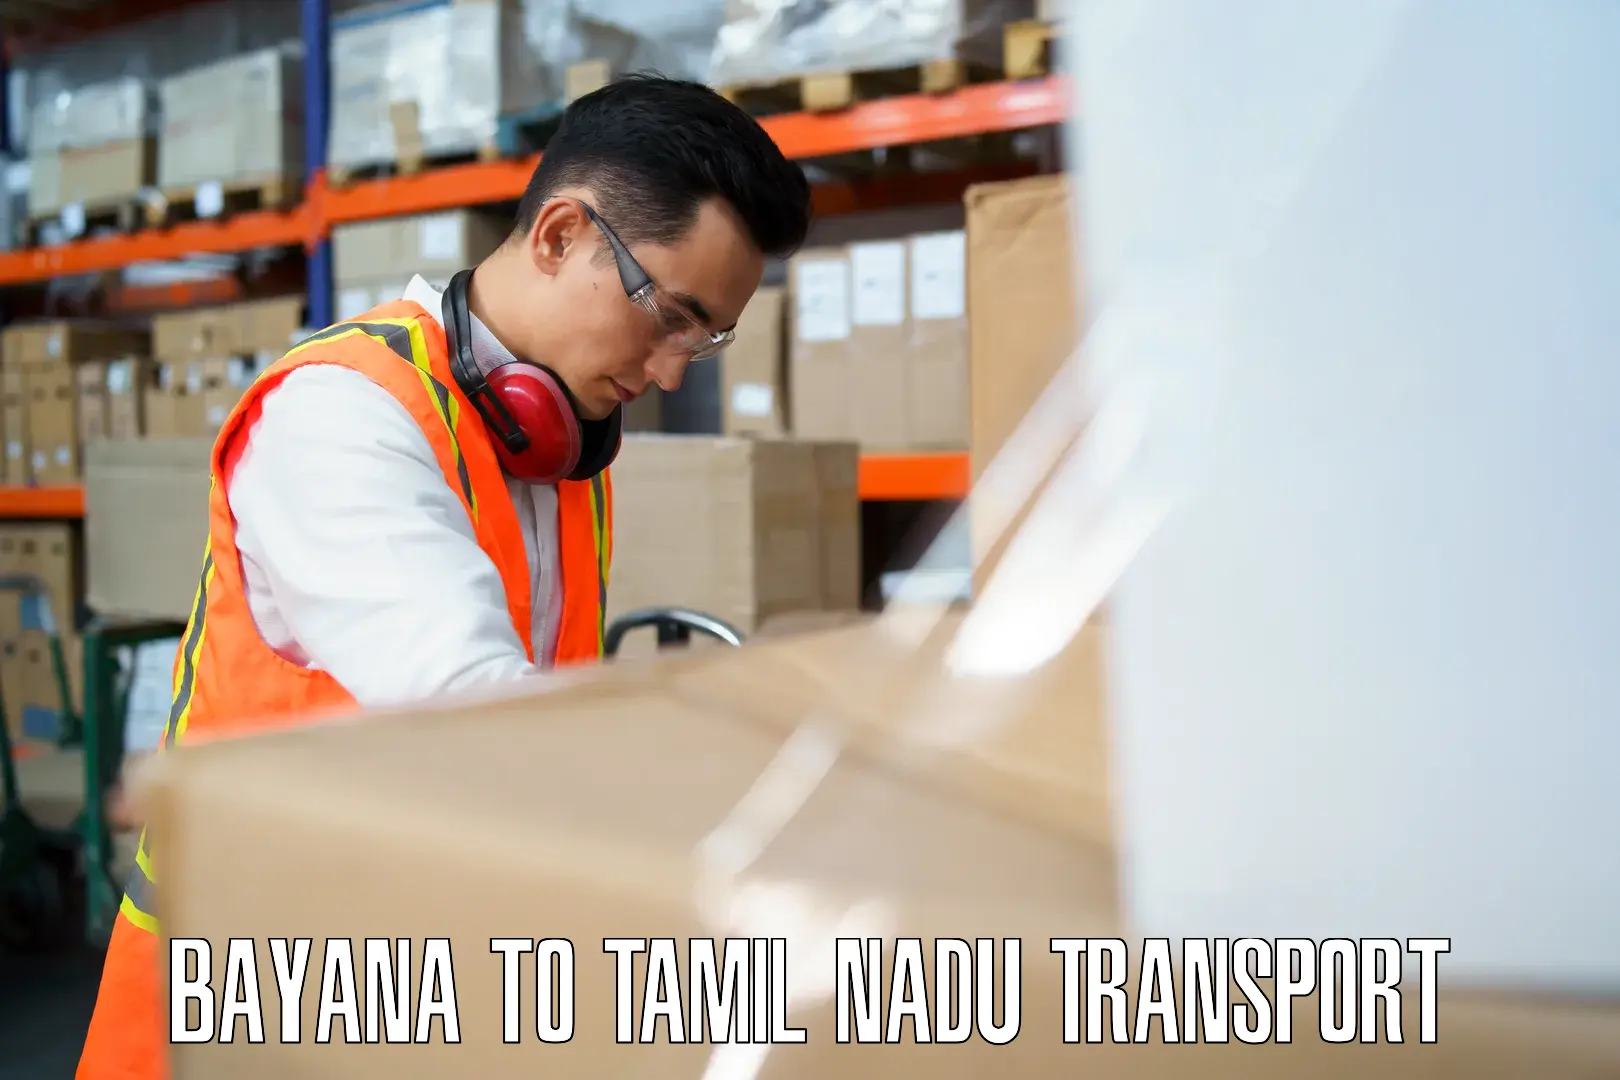 Pick up transport service Bayana to Melmaruvathur